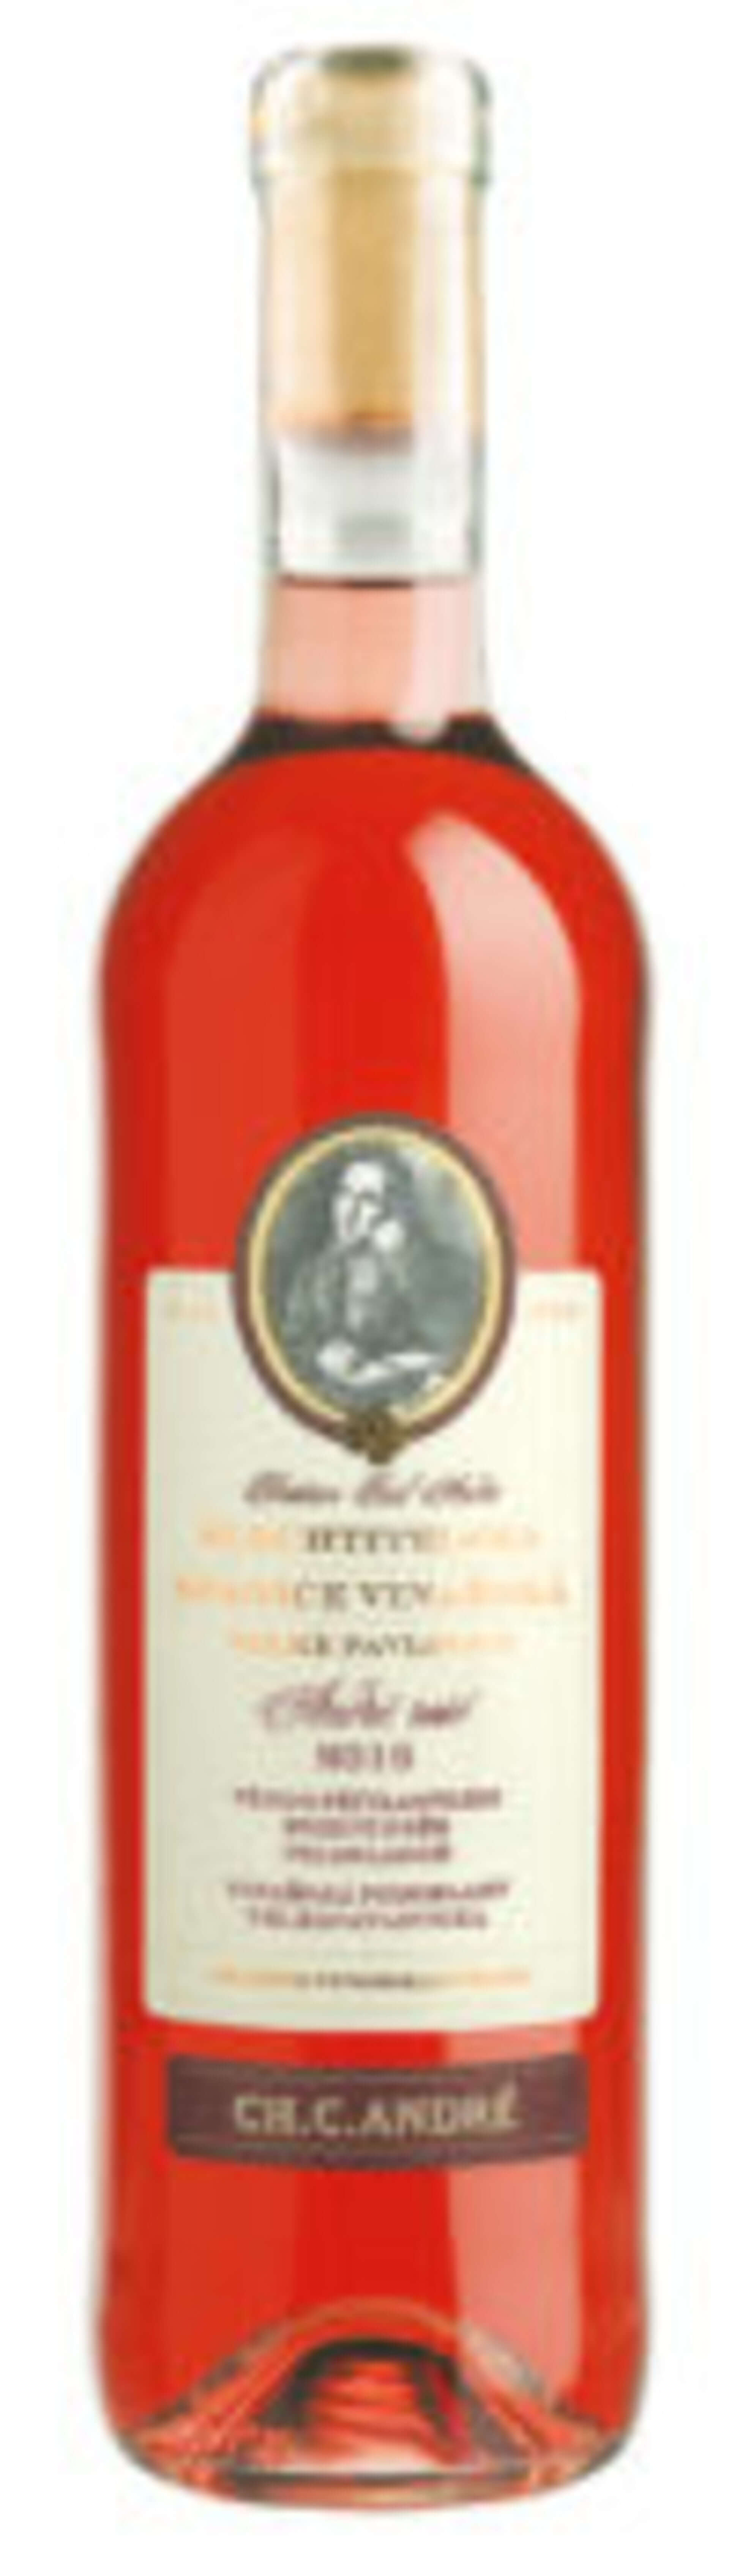 Ch.C.André -frizzante rosé 2017 750 ml